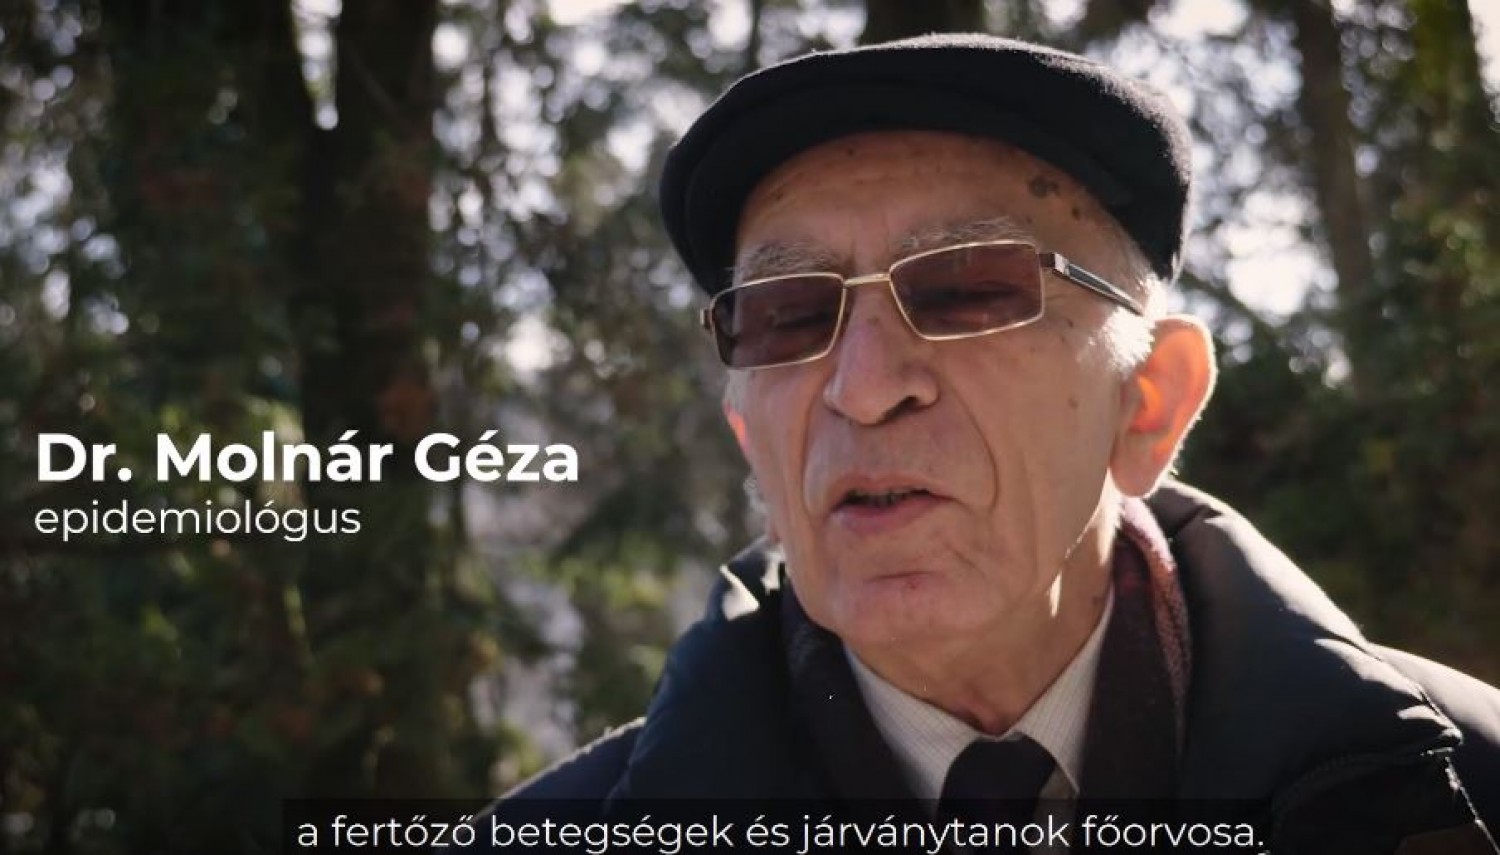 Az erdélyi járványtani főorvos őszintén beszél az oltásokról